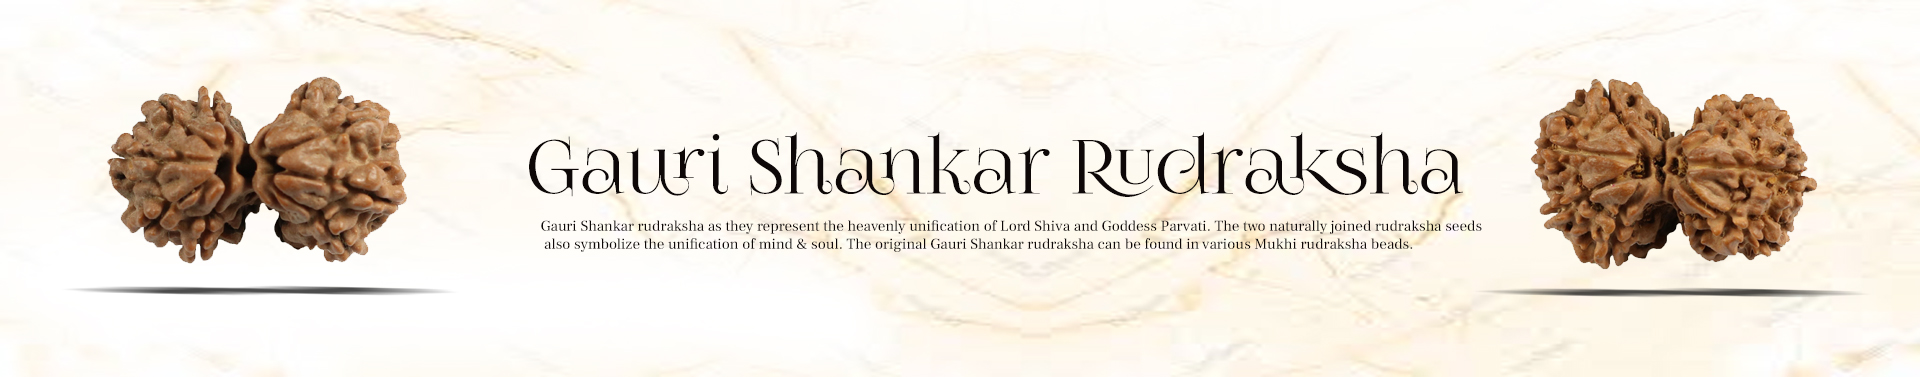 Gauri Shankar Rudraksha